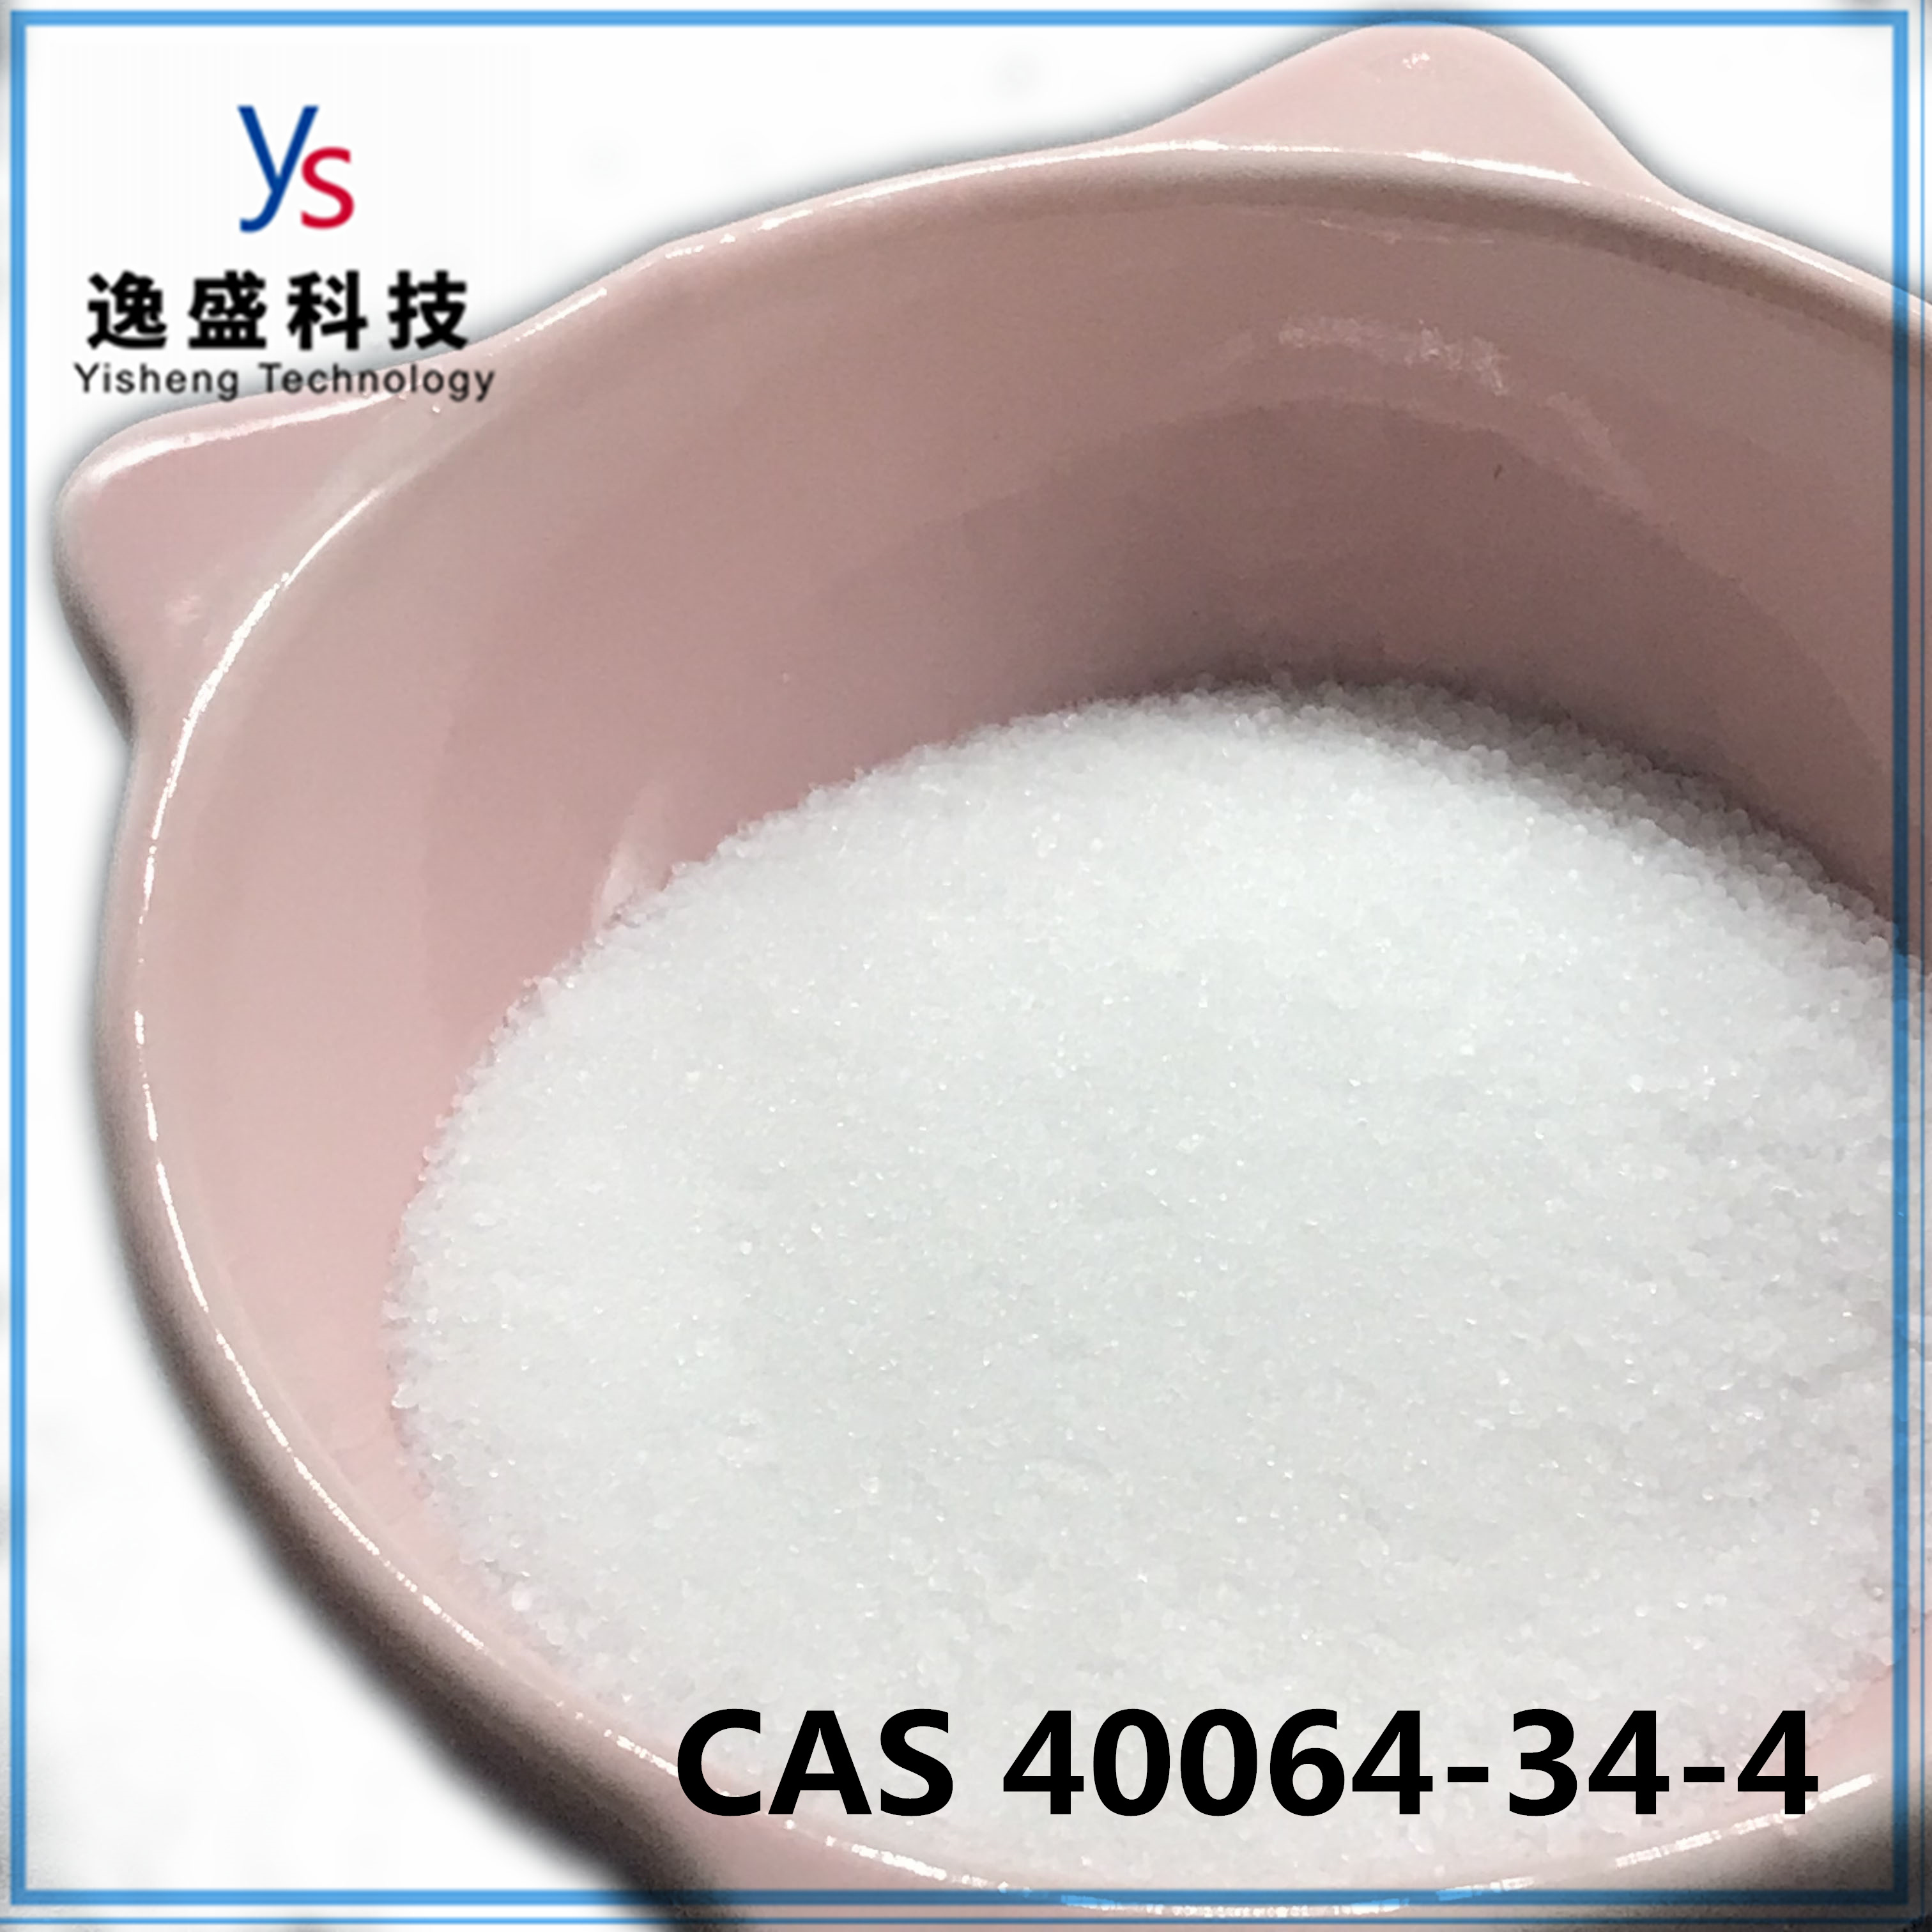 Aangepast gezondheidswit 4 4-piperidinediolhydrochloride CAS 40064-34-4